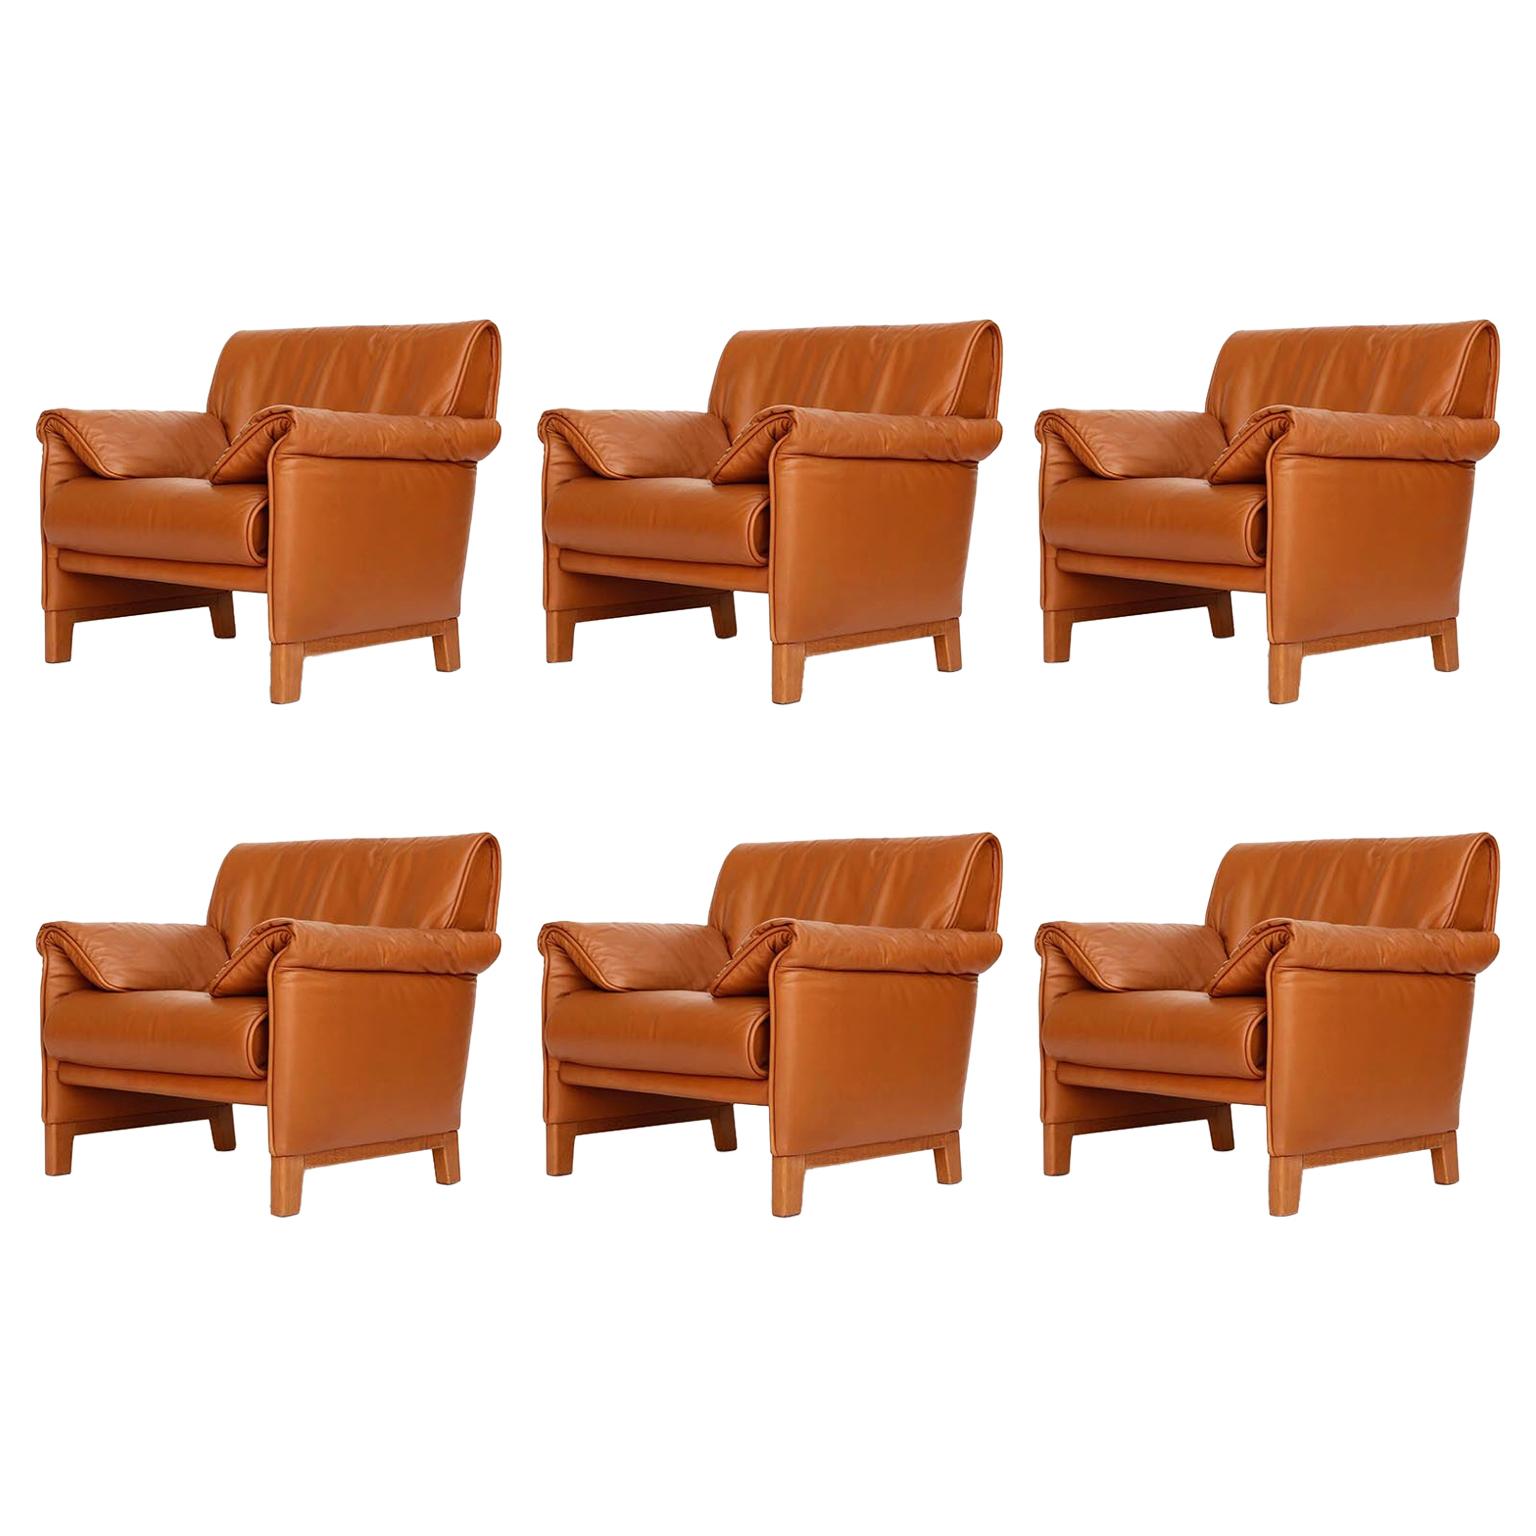 Four De Sede 'DS-14' Armchairs Lounge Chairs, Cognac Leather Teak, 1989 For Sale